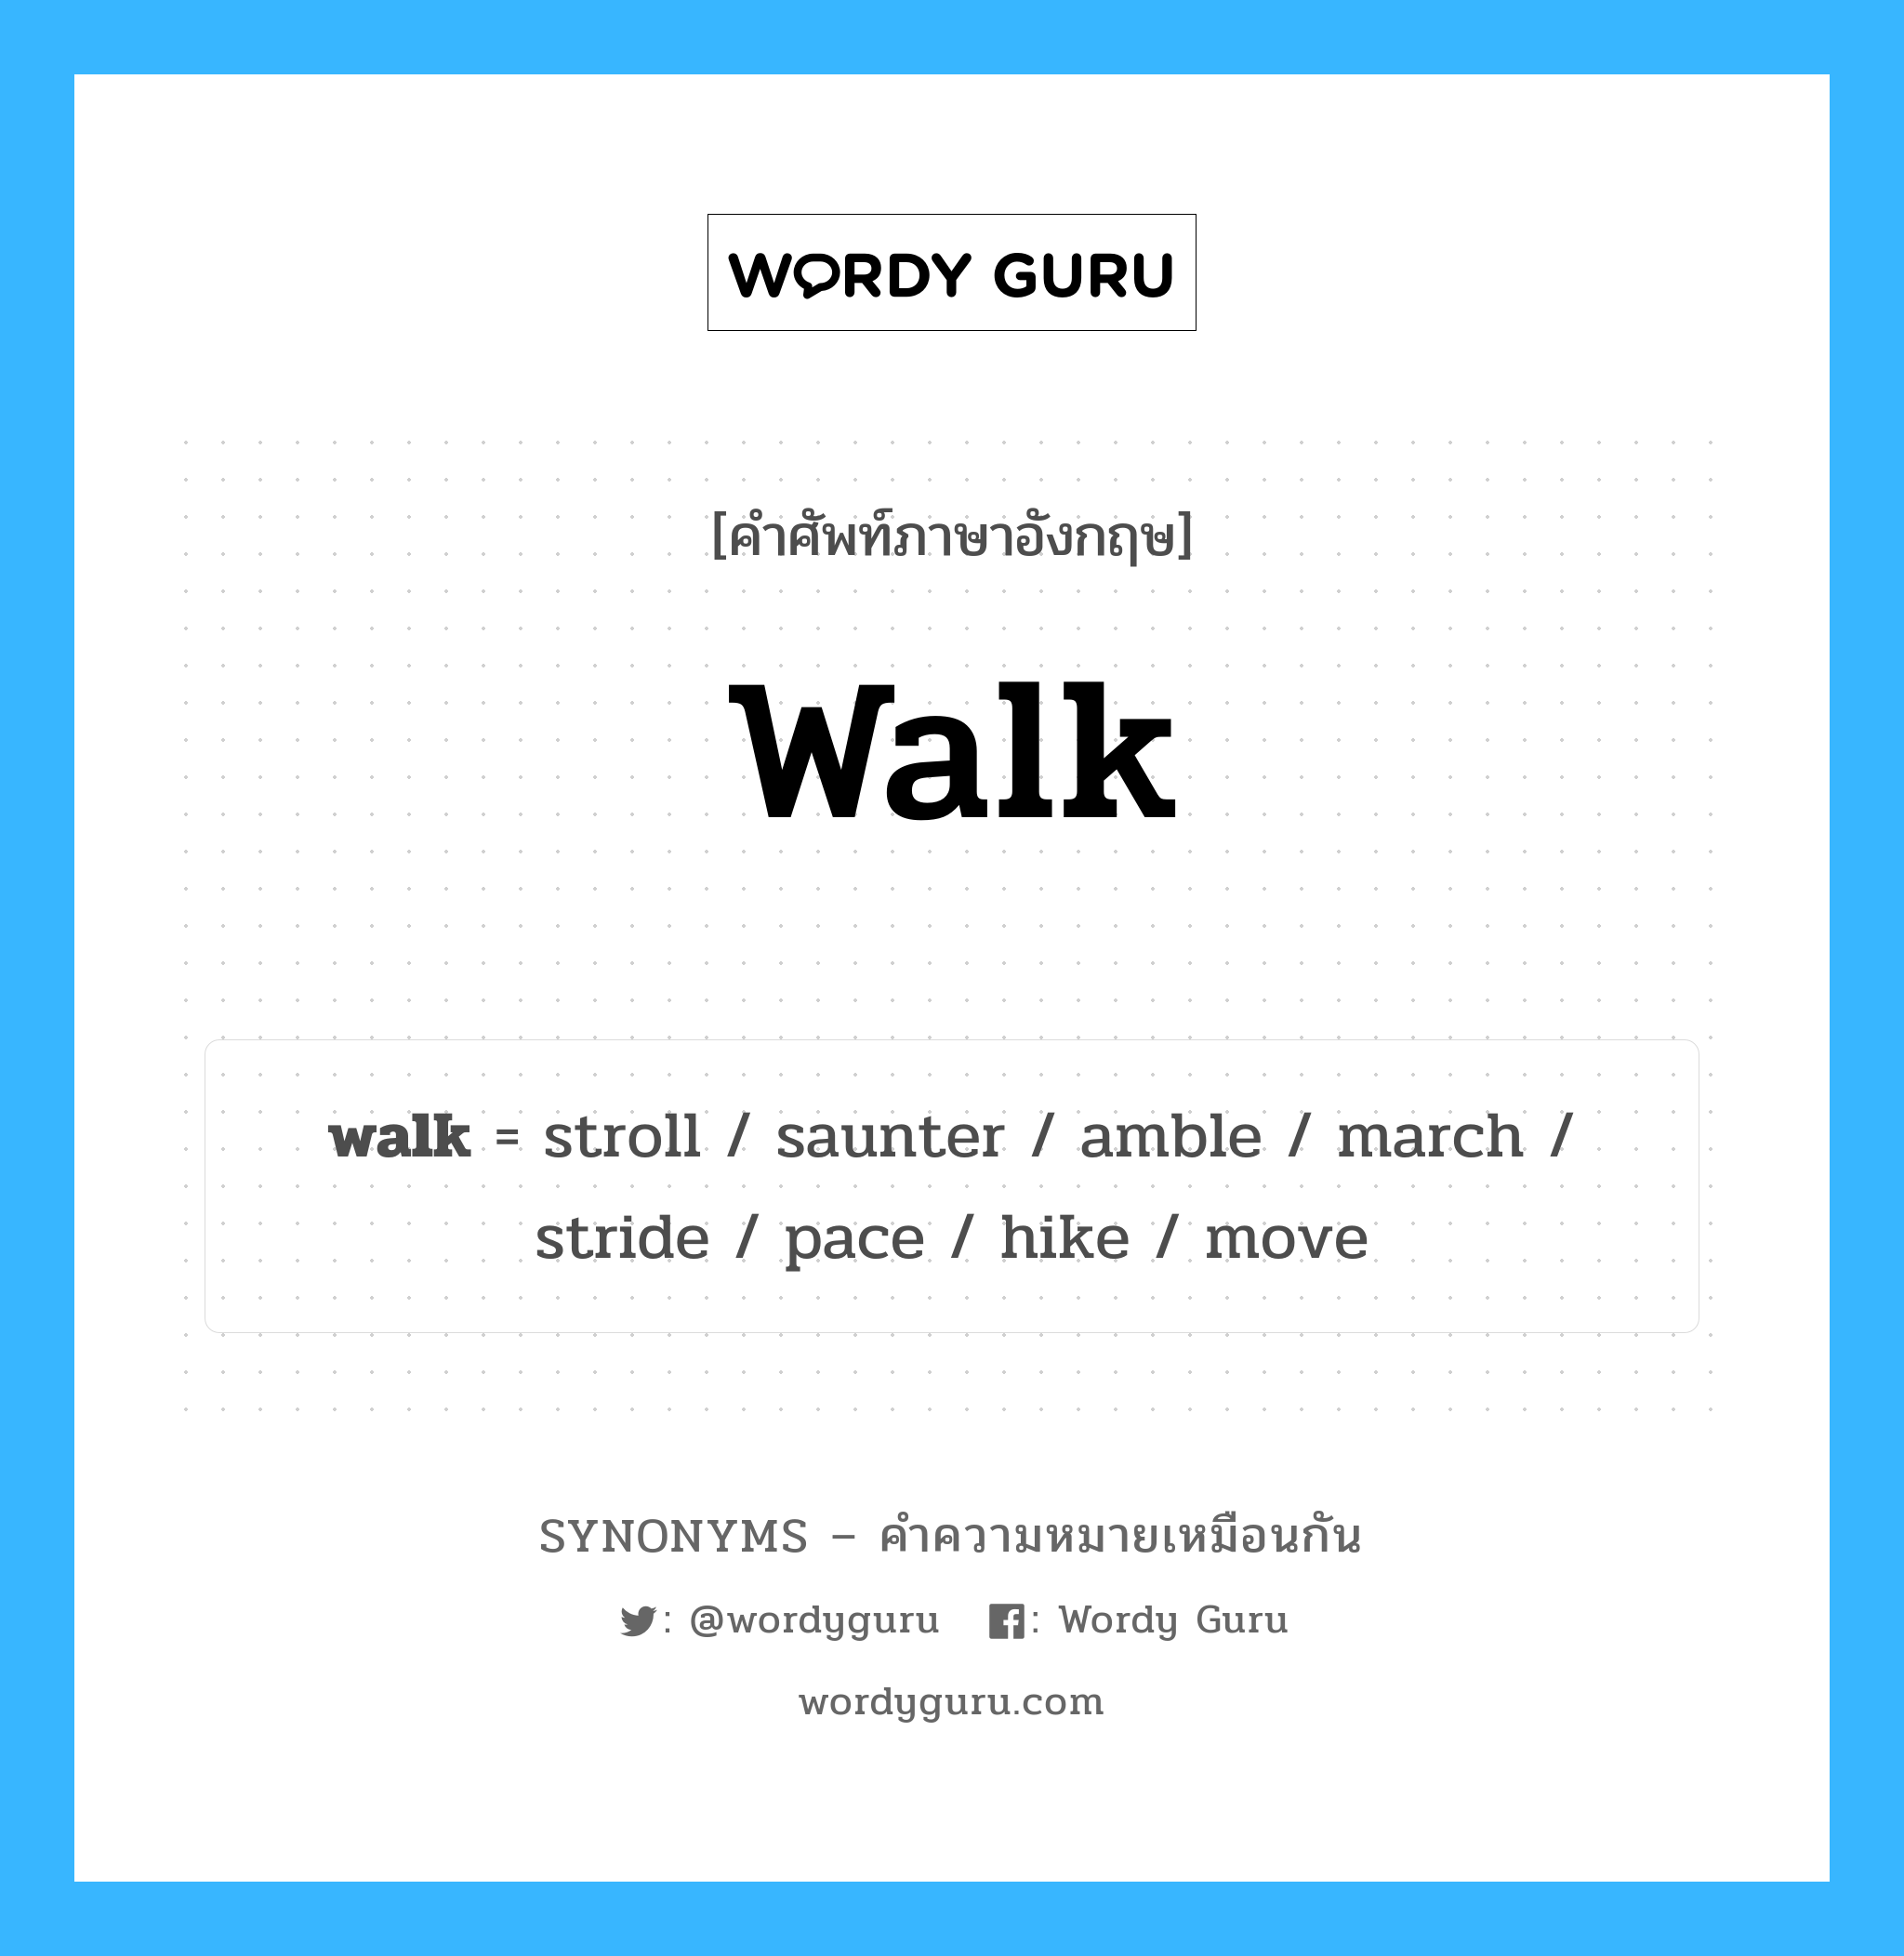 stroll เป็นหนึ่งใน walk และมีคำอื่น ๆ อีกดังนี้, คำศัพท์ภาษาอังกฤษ stroll ความหมายคล้ายกันกับ walk แปลว่า เดินเล่น หมวด walk